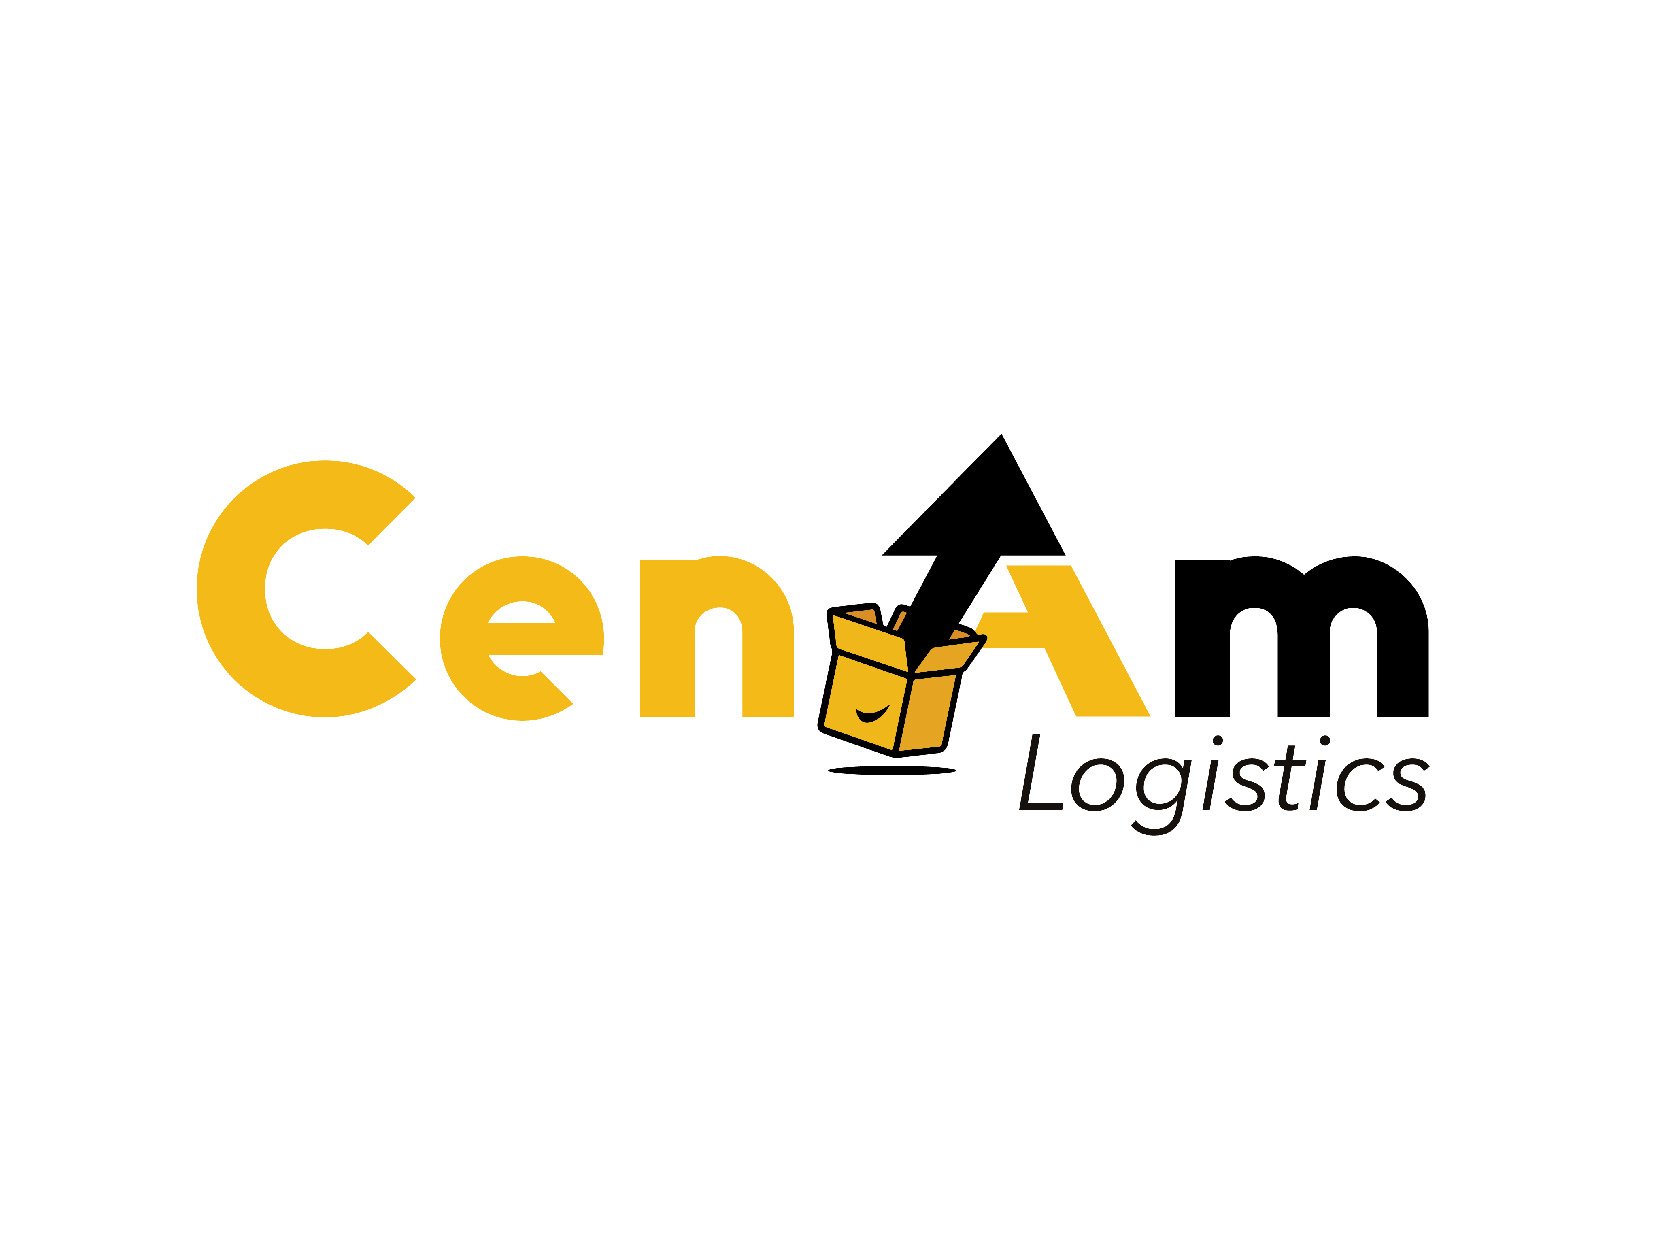 Recibe tarifa preferencial del 25% de descuento en los paquetes que traes con CENAM Logistics